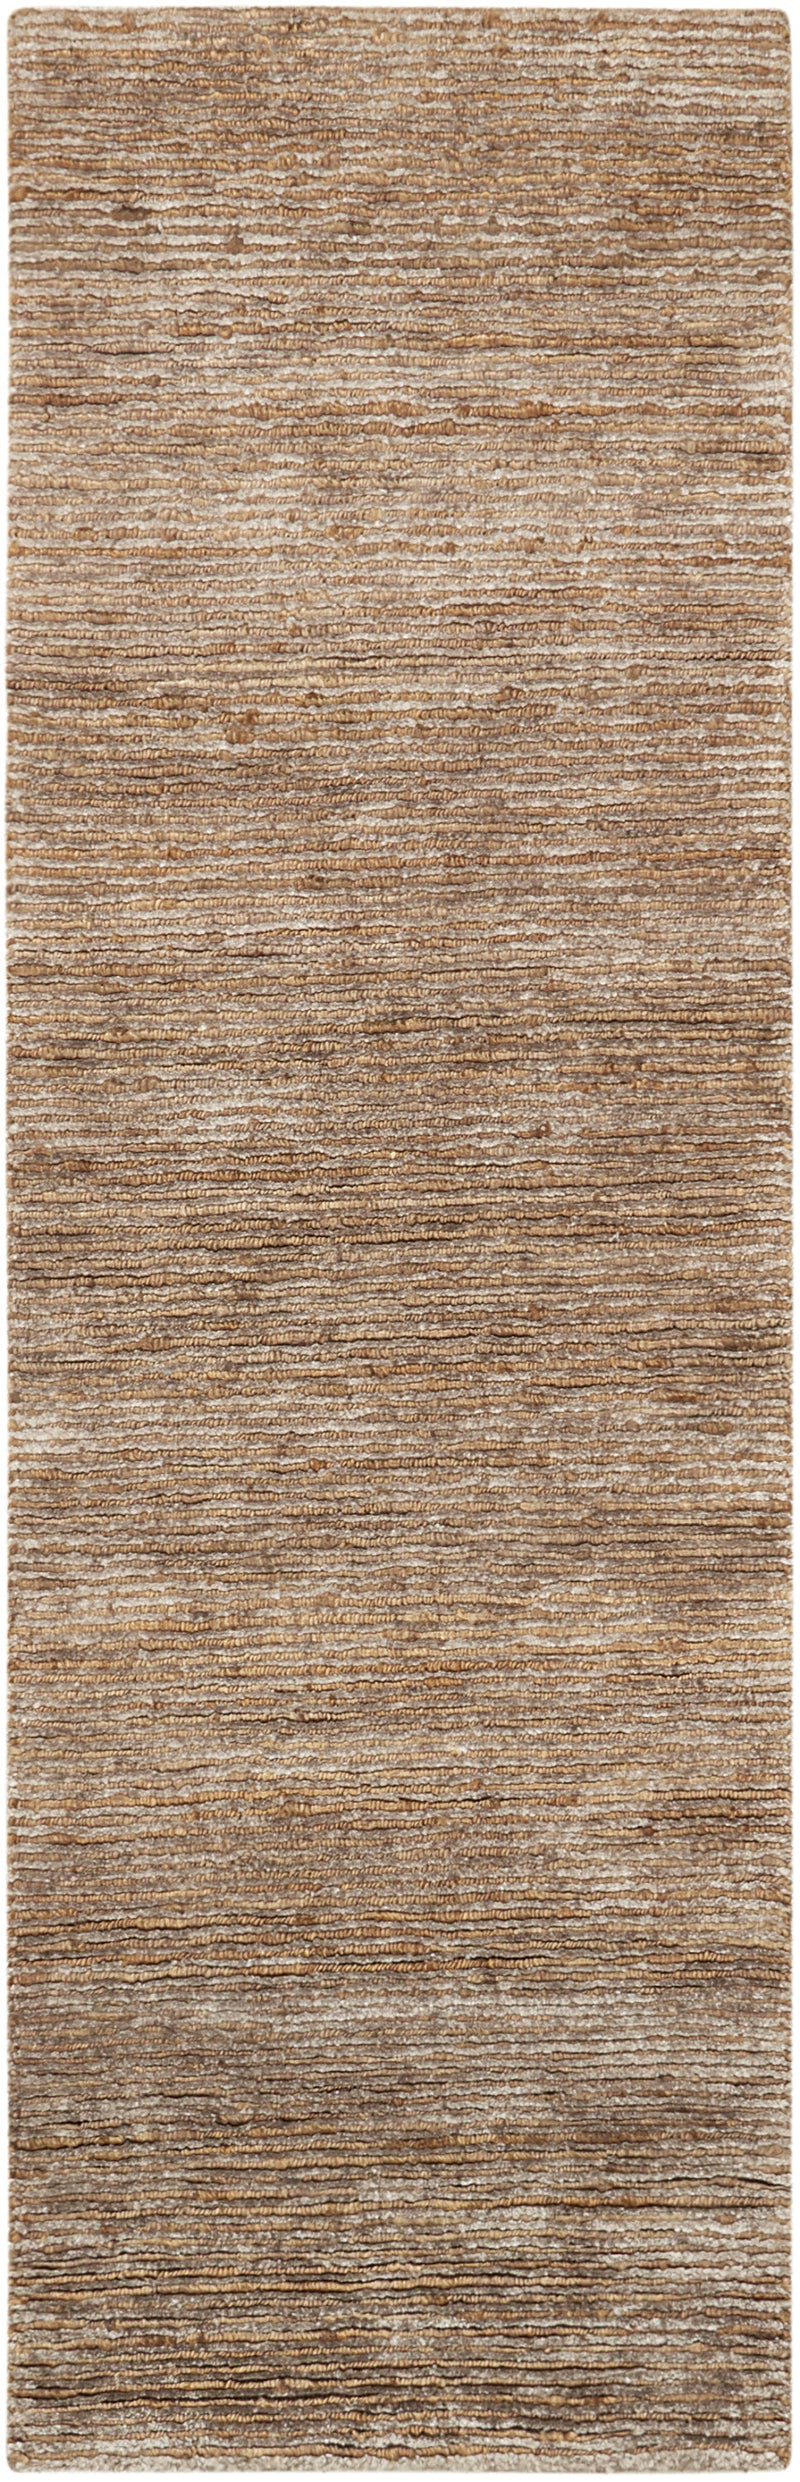 media image for mesa handmade amber rug by nourison 99446244871 redo 2 212